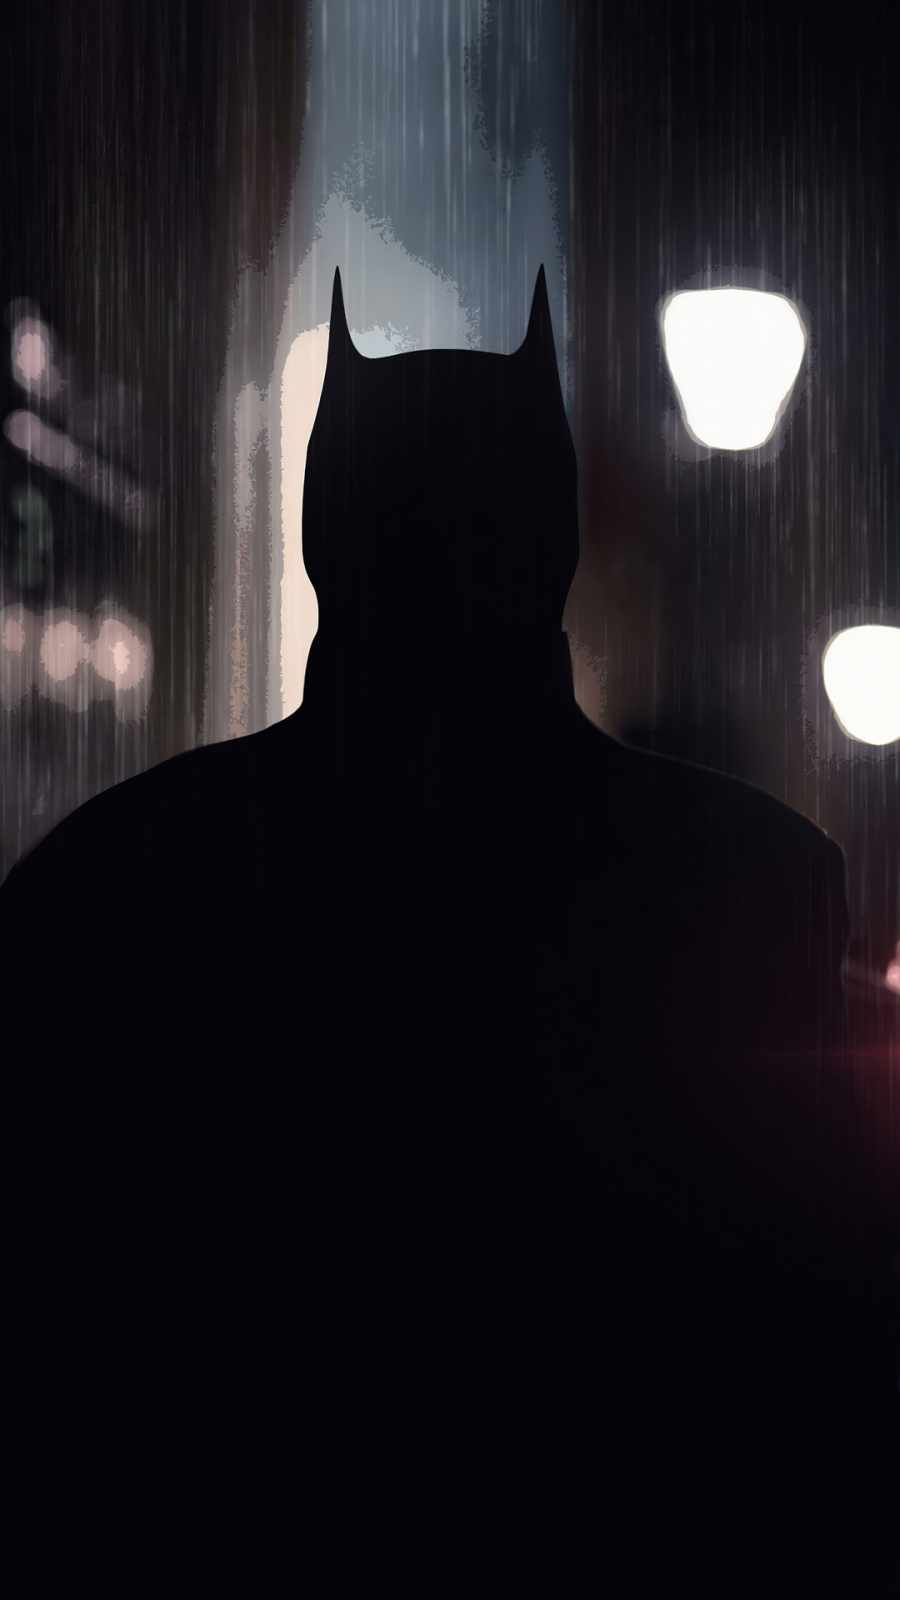 The Batman Noir IPhone Wallpaper Wallpaper, iPhone Wallpaper. Batman wallpaper, Batman, Batman silhouette